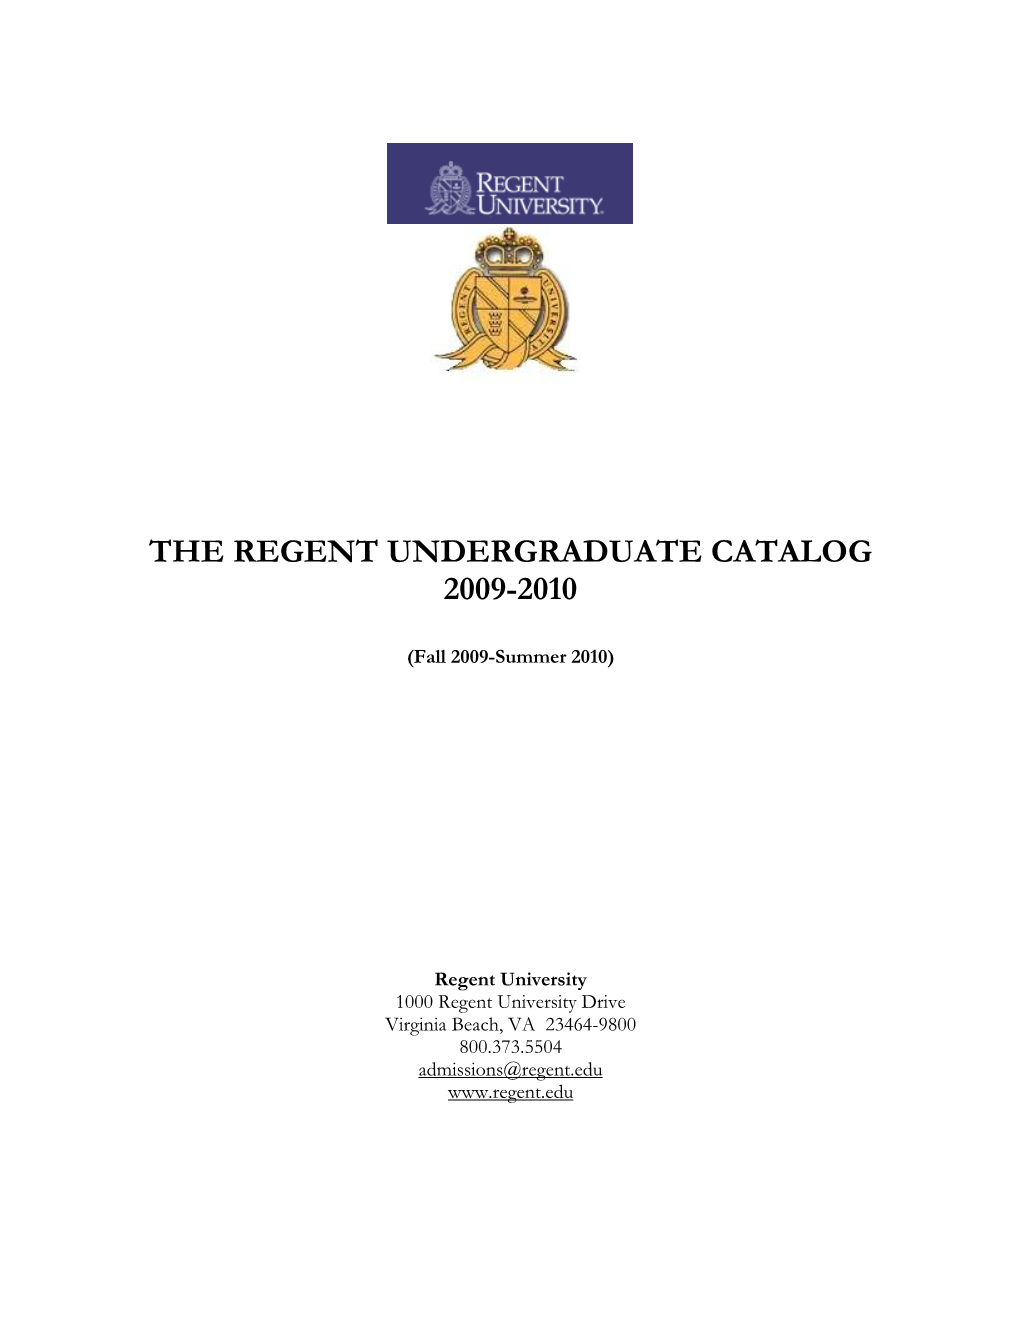 The Regent Undergraduate Catalog 2009-2010